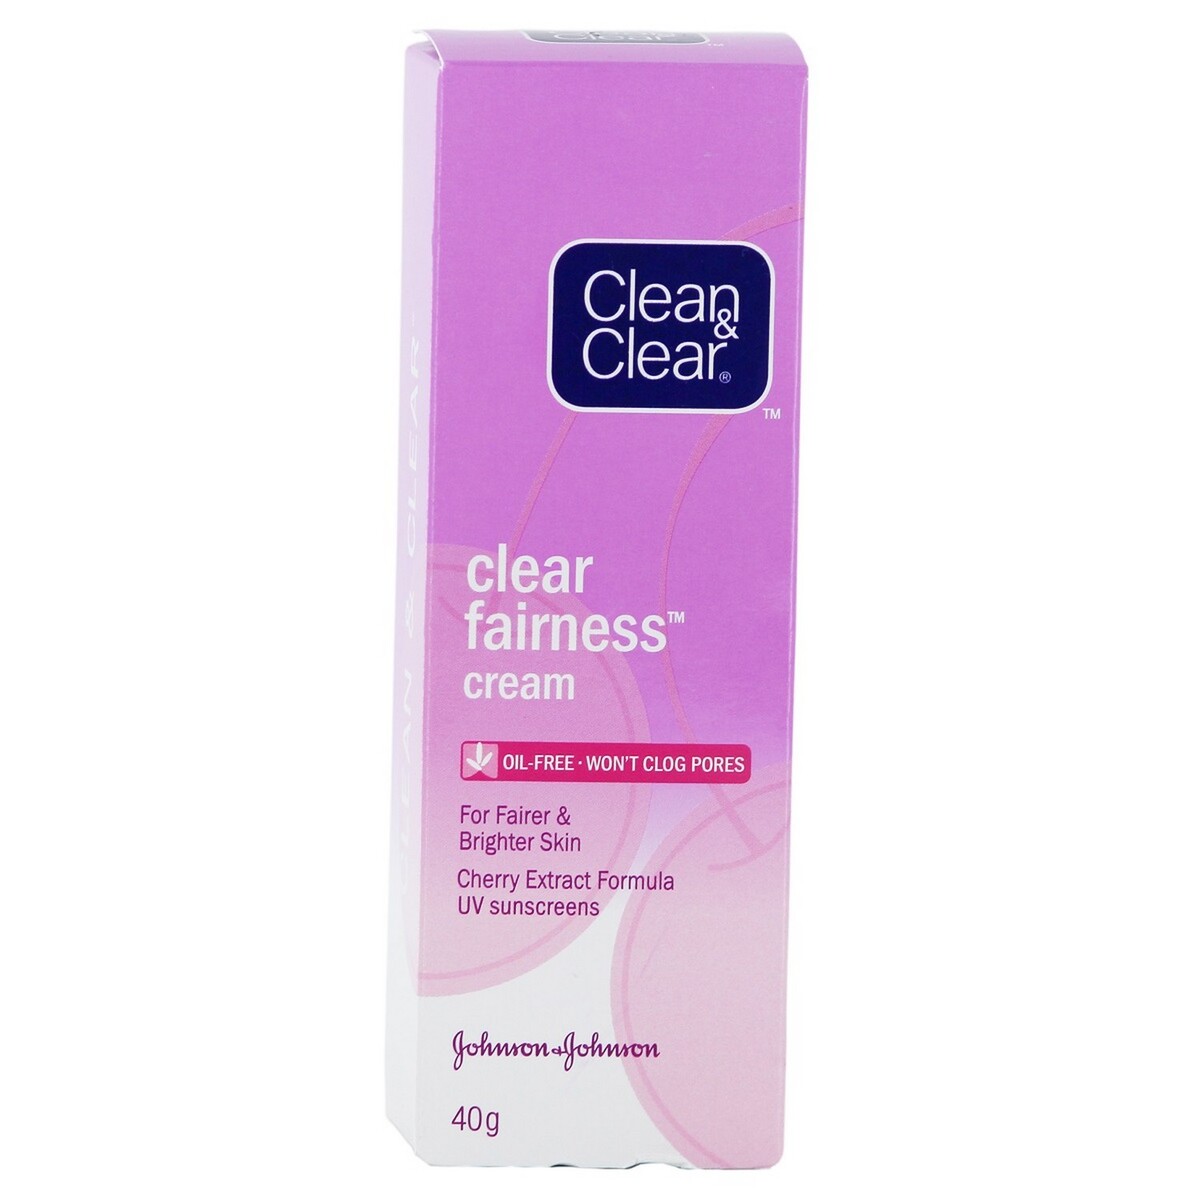 Clean & Clear Clear Fairness Cream 40g